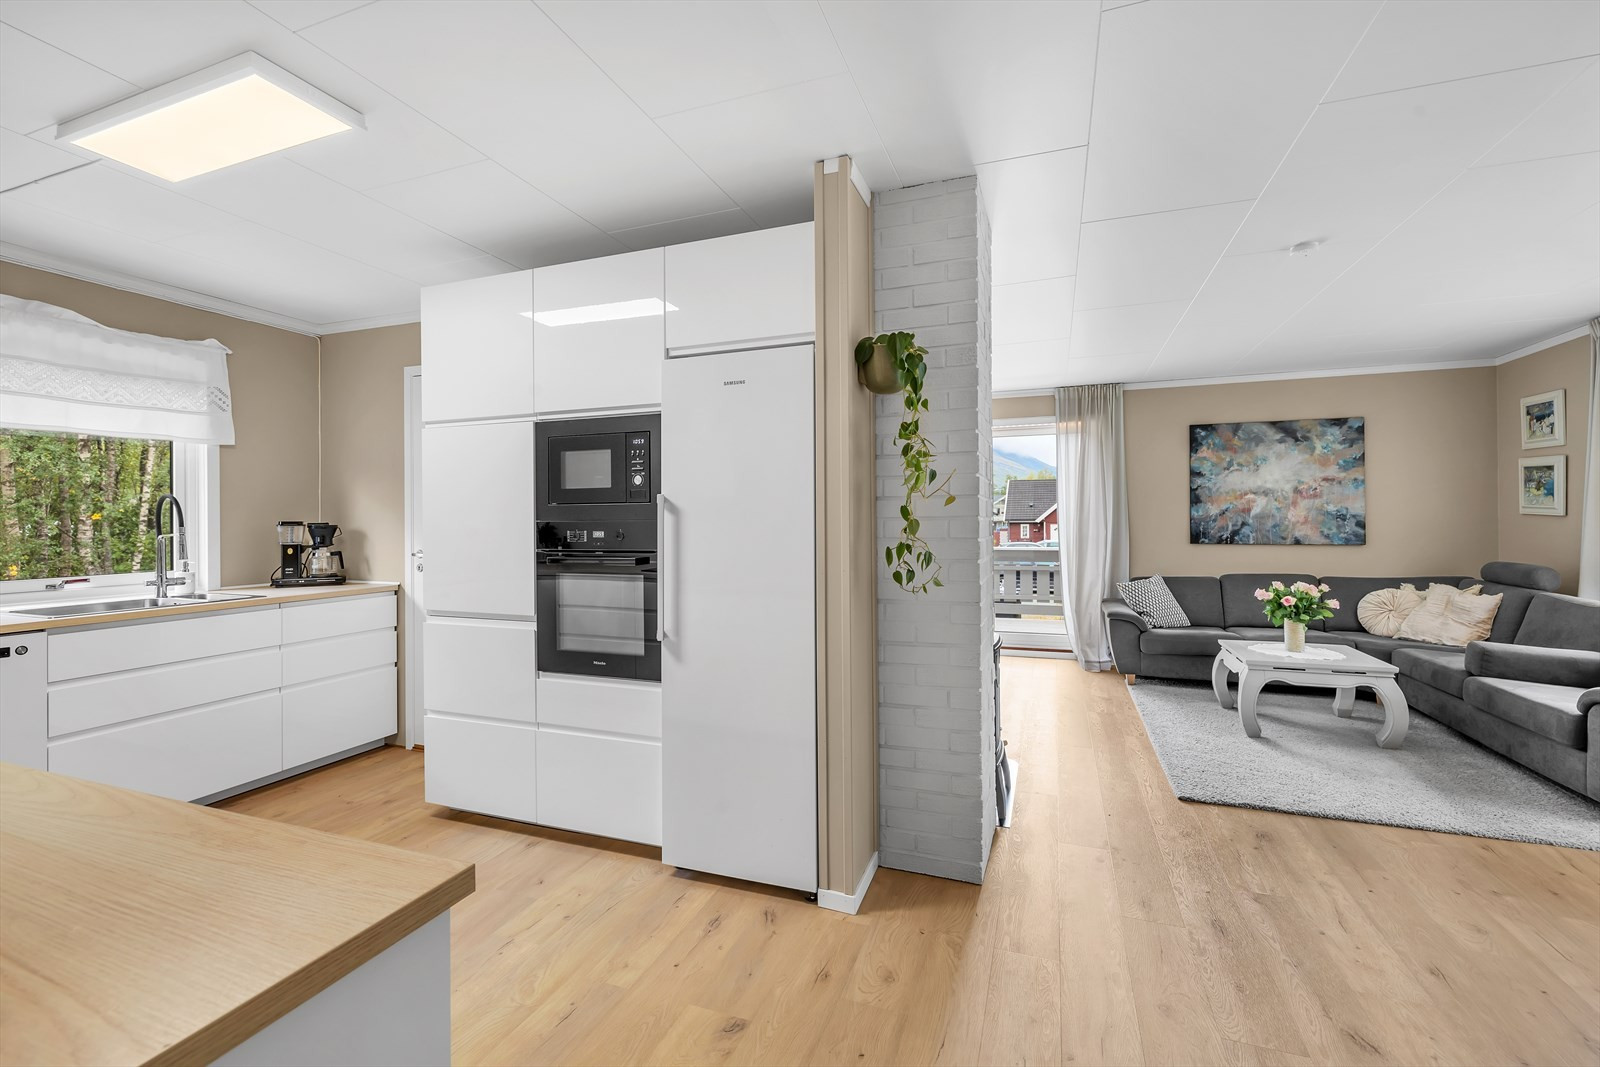 Kjøkken og stue ble pusset opp i 2021